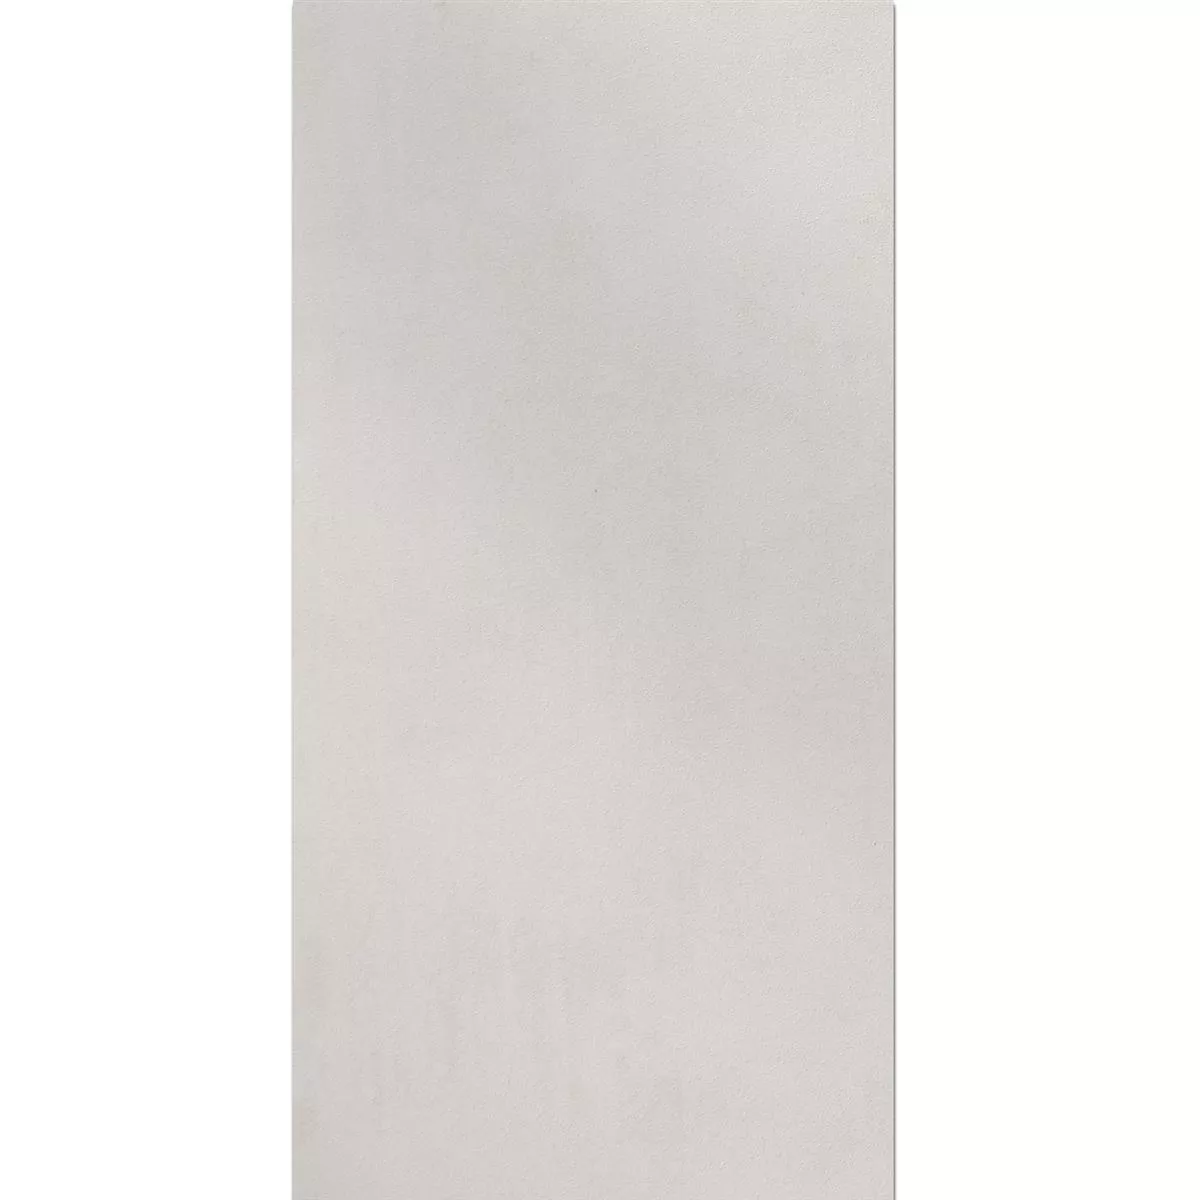 Taras Płyta Zeus Beton Optyka White 60x90cm